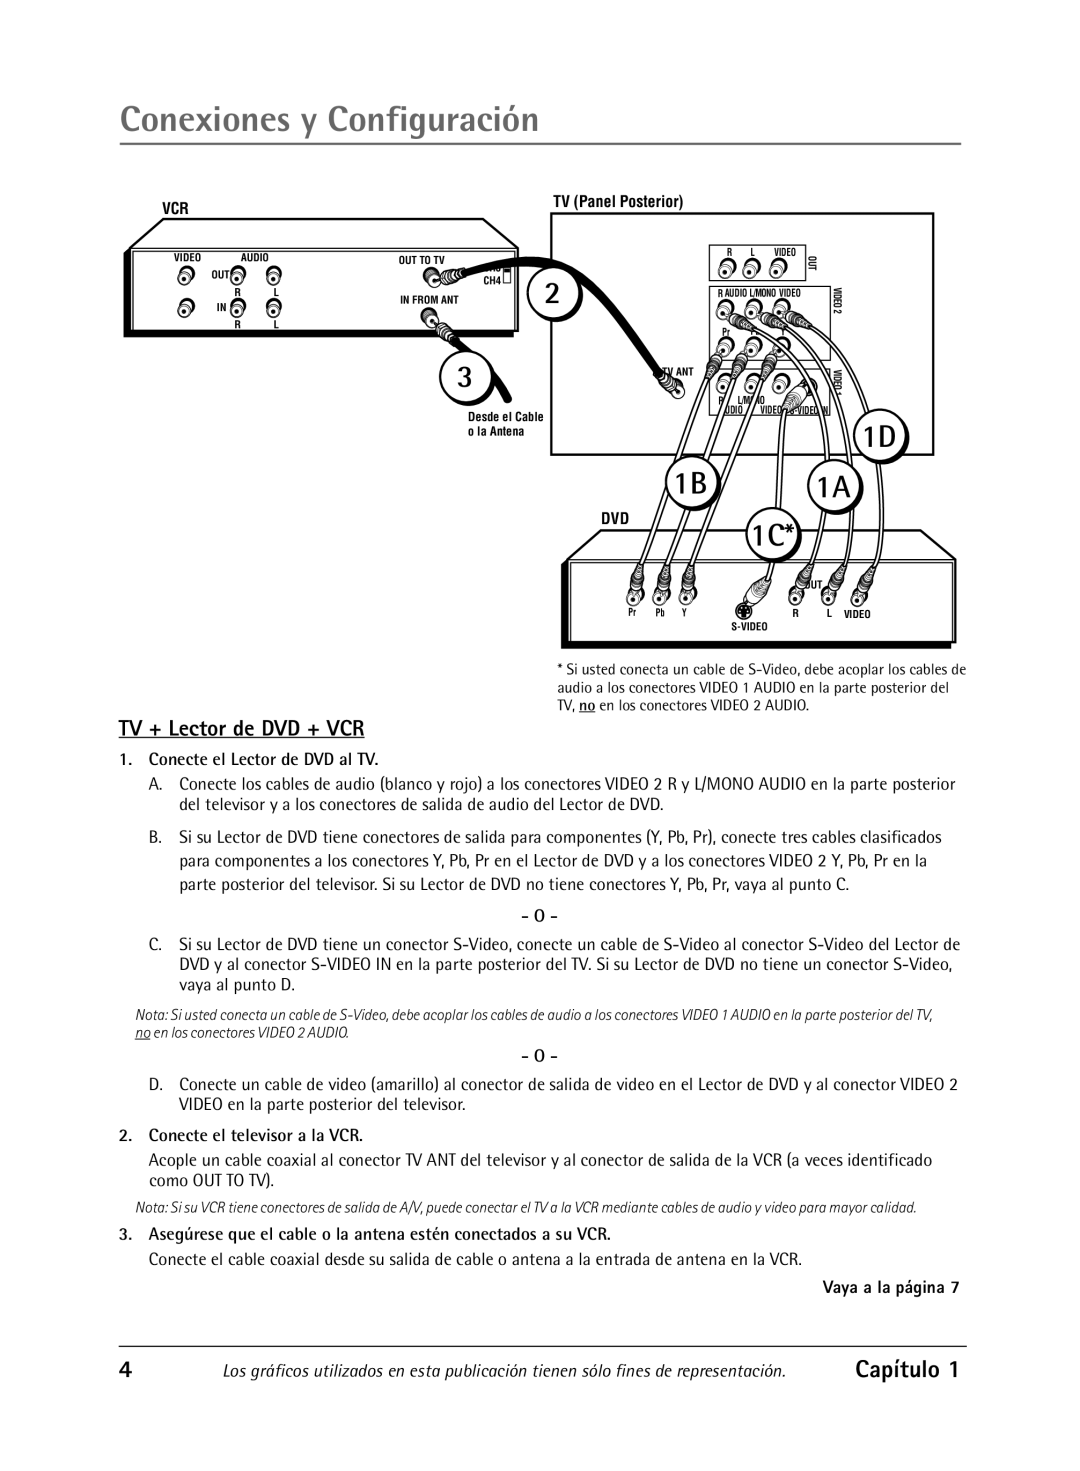 RCA Televison manual Conexiones y Configuración, TV + Lector de DVD + VCR, Capítulo, Conecte el Lector de DVD al TV, 1B 1A 